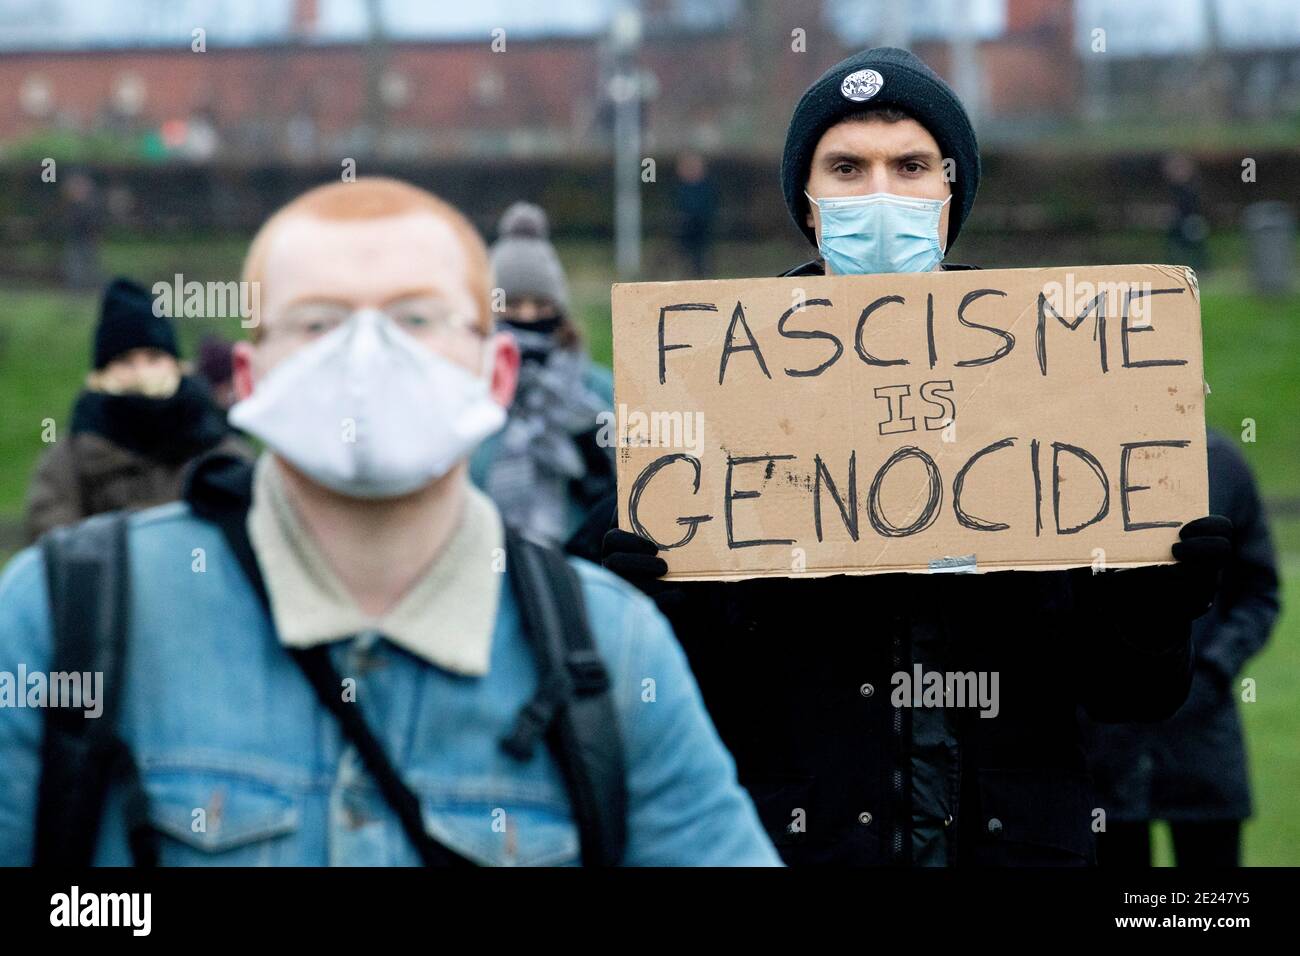 AMSTERDAM, PAYS-BAS - 10 JANVIER : des manifestants sont vus lors d'une manifestation anti-fascisme dans le Westerpark le 10 janvier 2021 à Amsterdam, pays-Bas Banque D'Images